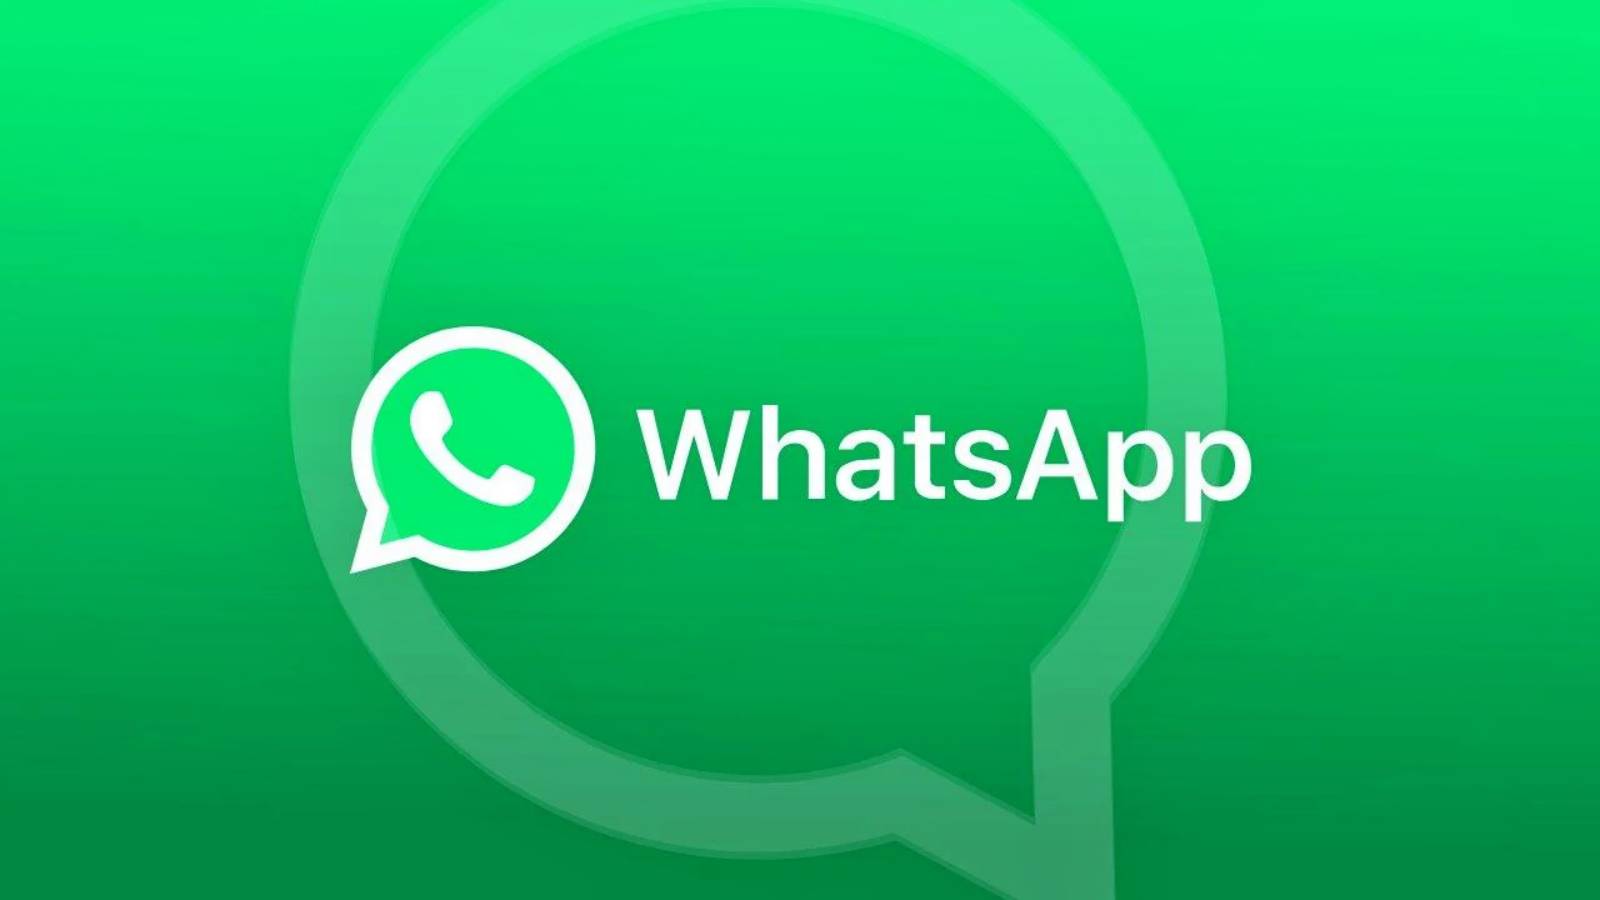 WhatsApp iPhonen vaihtaminen Androidille ei monet tienneet